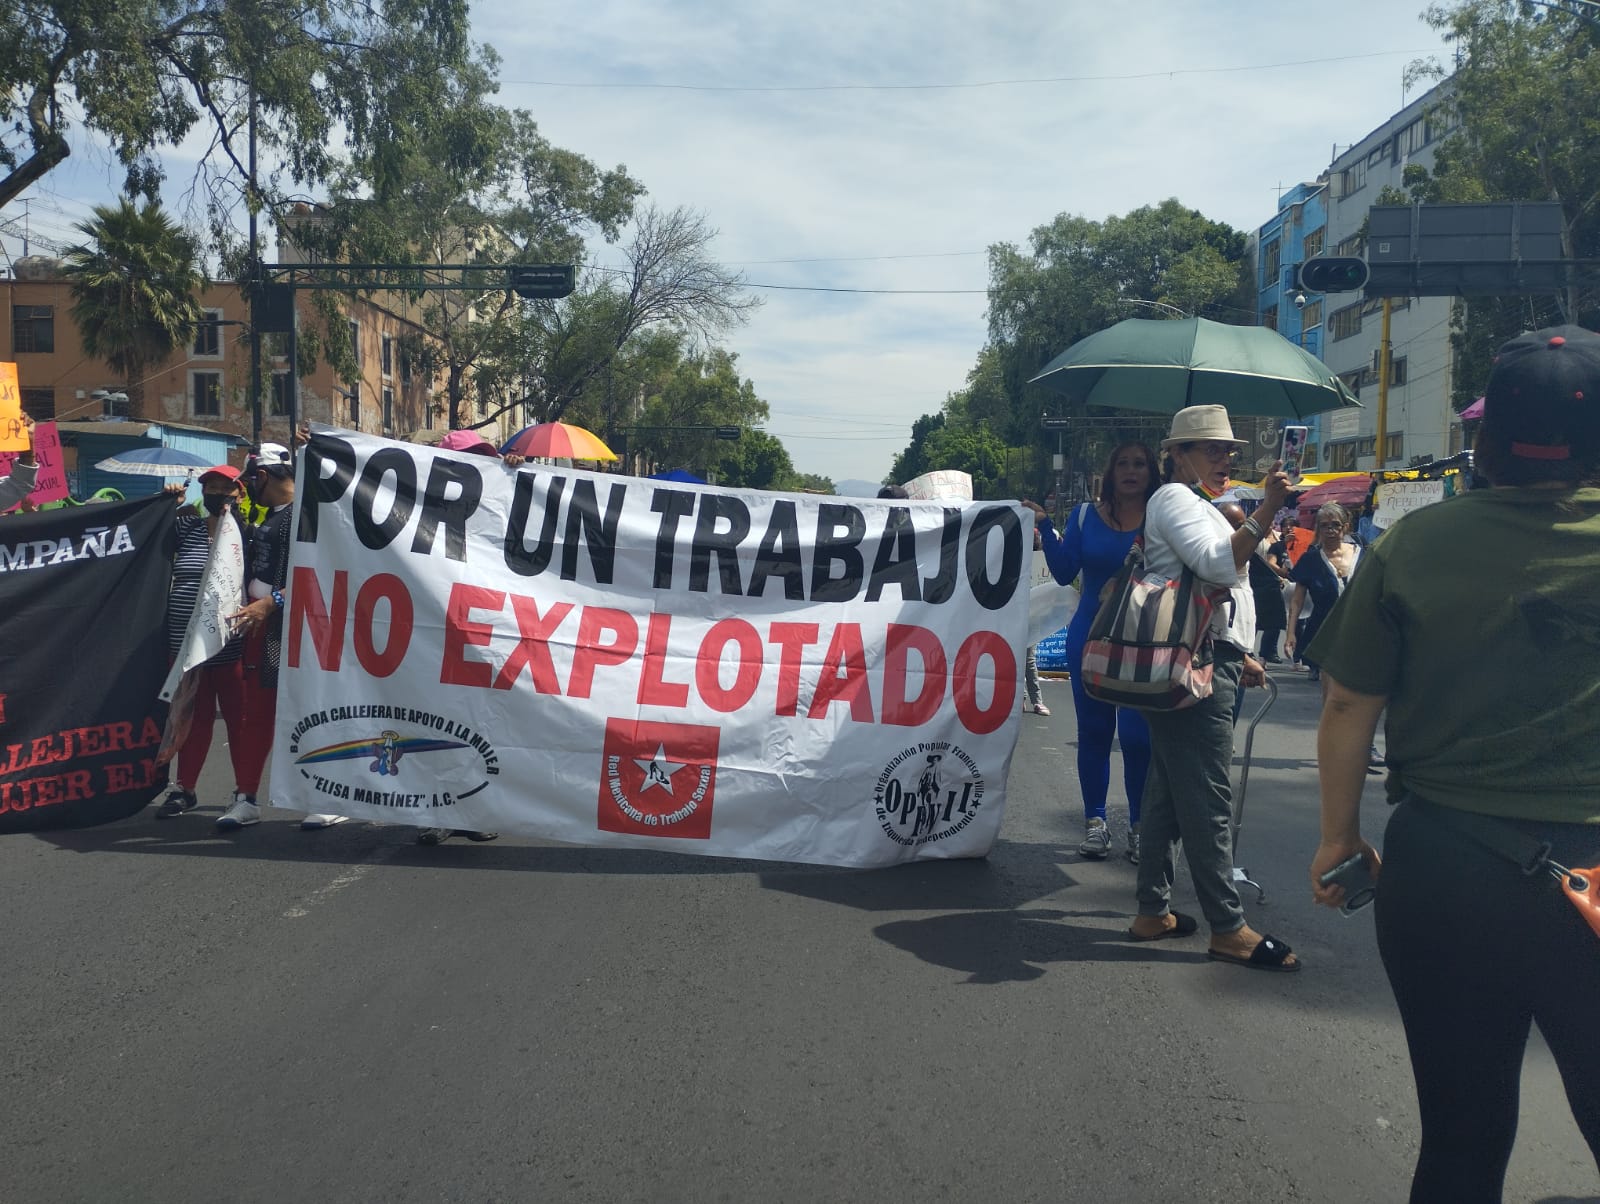 Trabajadoras sexuales marchan en defensa de sus derechos laborales en Ciudad de México